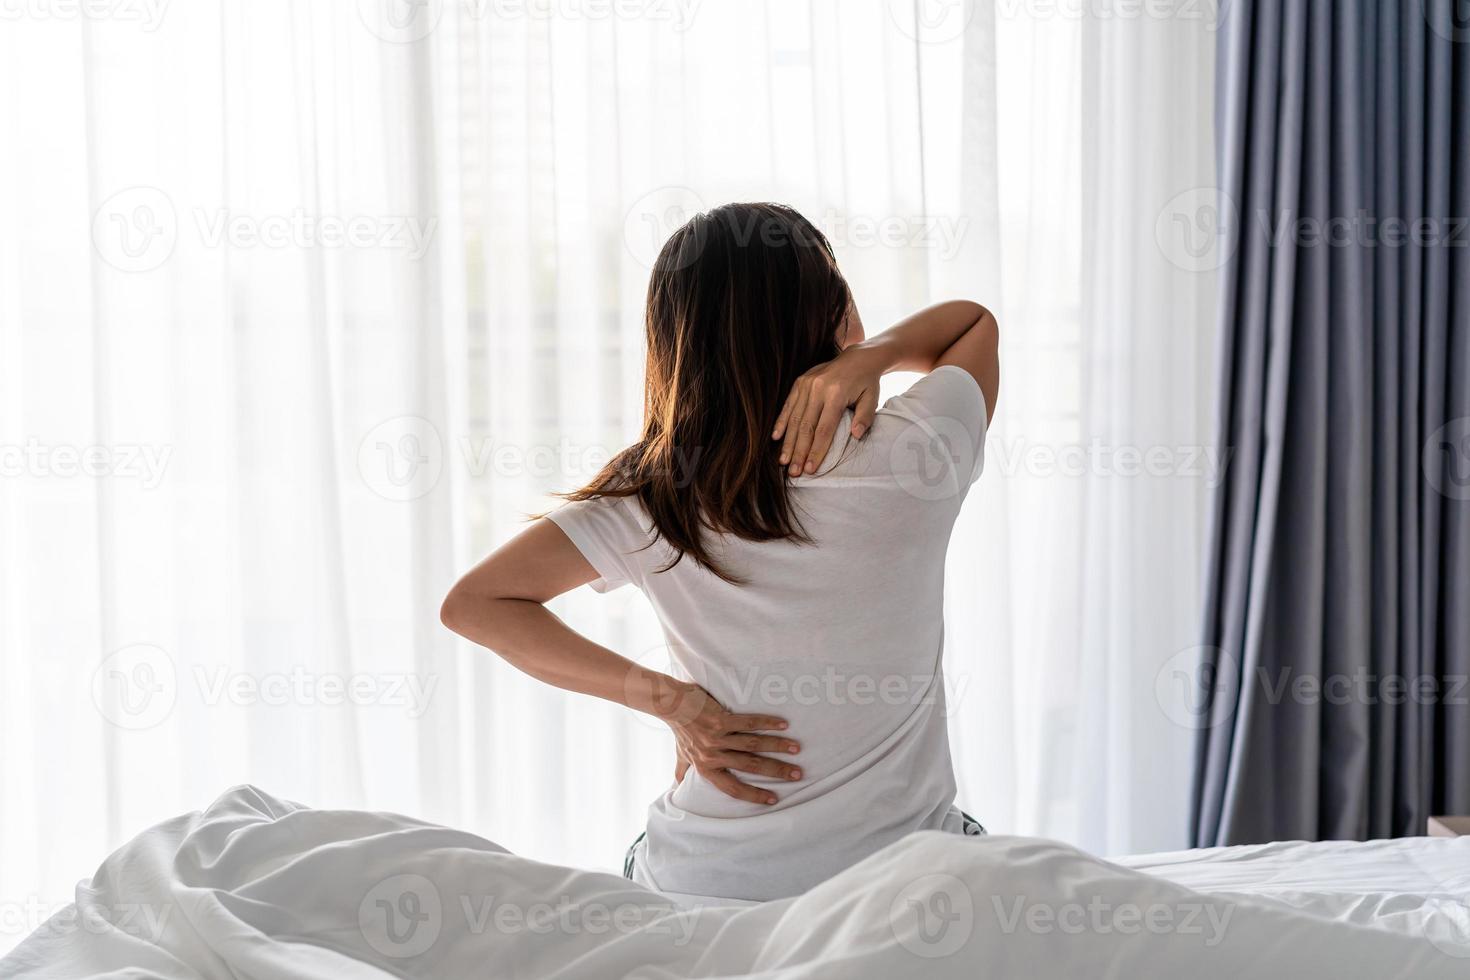 vrouw die lijdt aan rugpijn en nekpijn op het bed, gezondheidszorg en probleemconcept foto